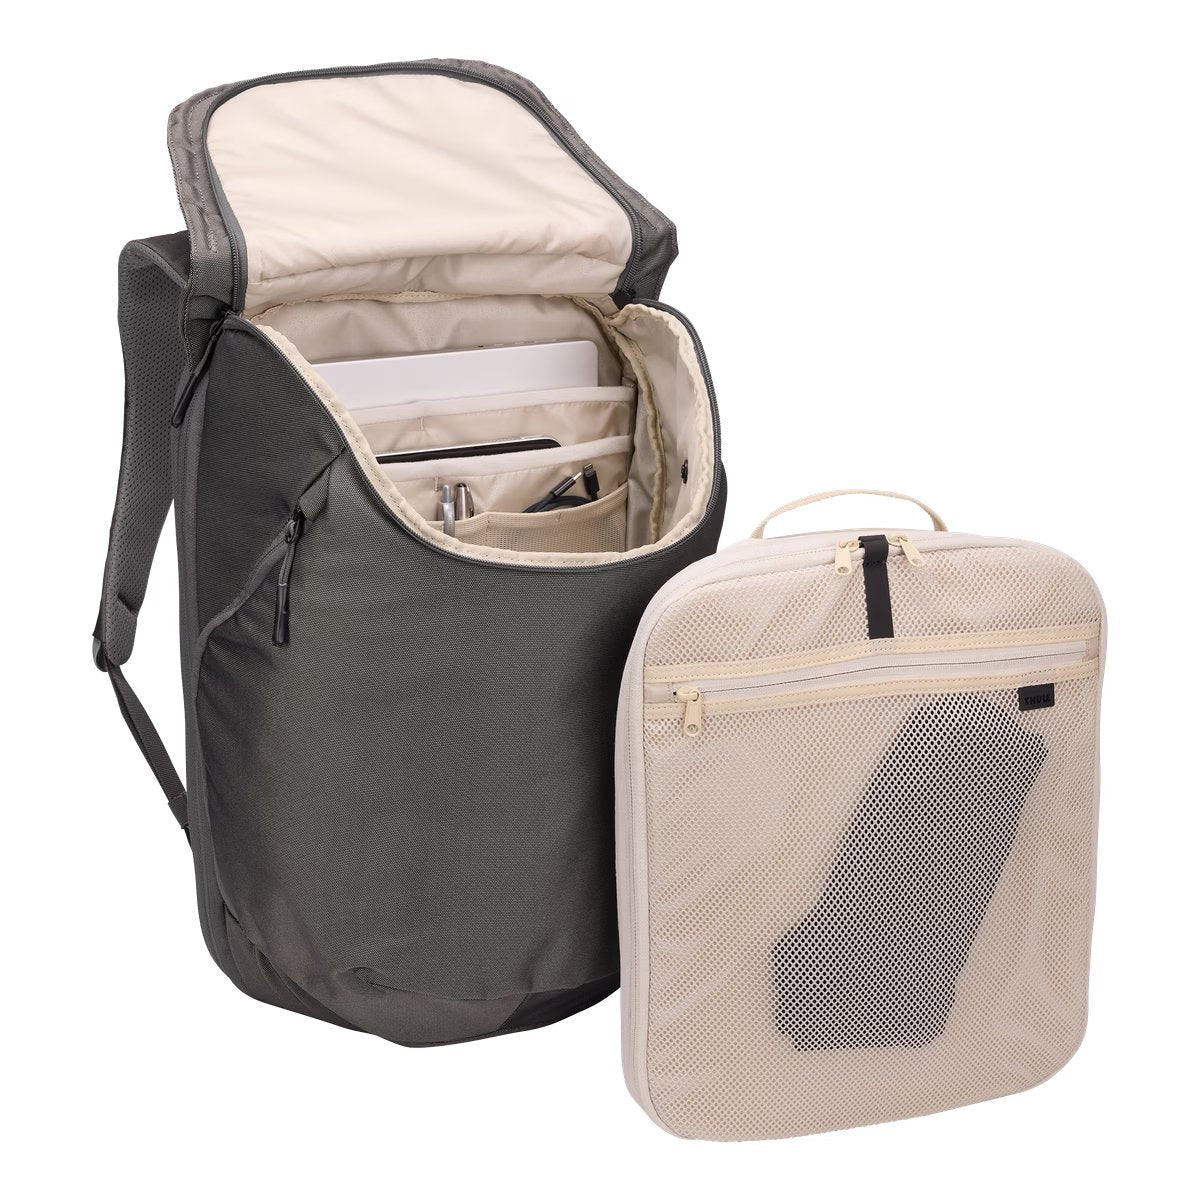 Backpack for travel 26L Thule 5056 Subterra 2 Vetiver Gray